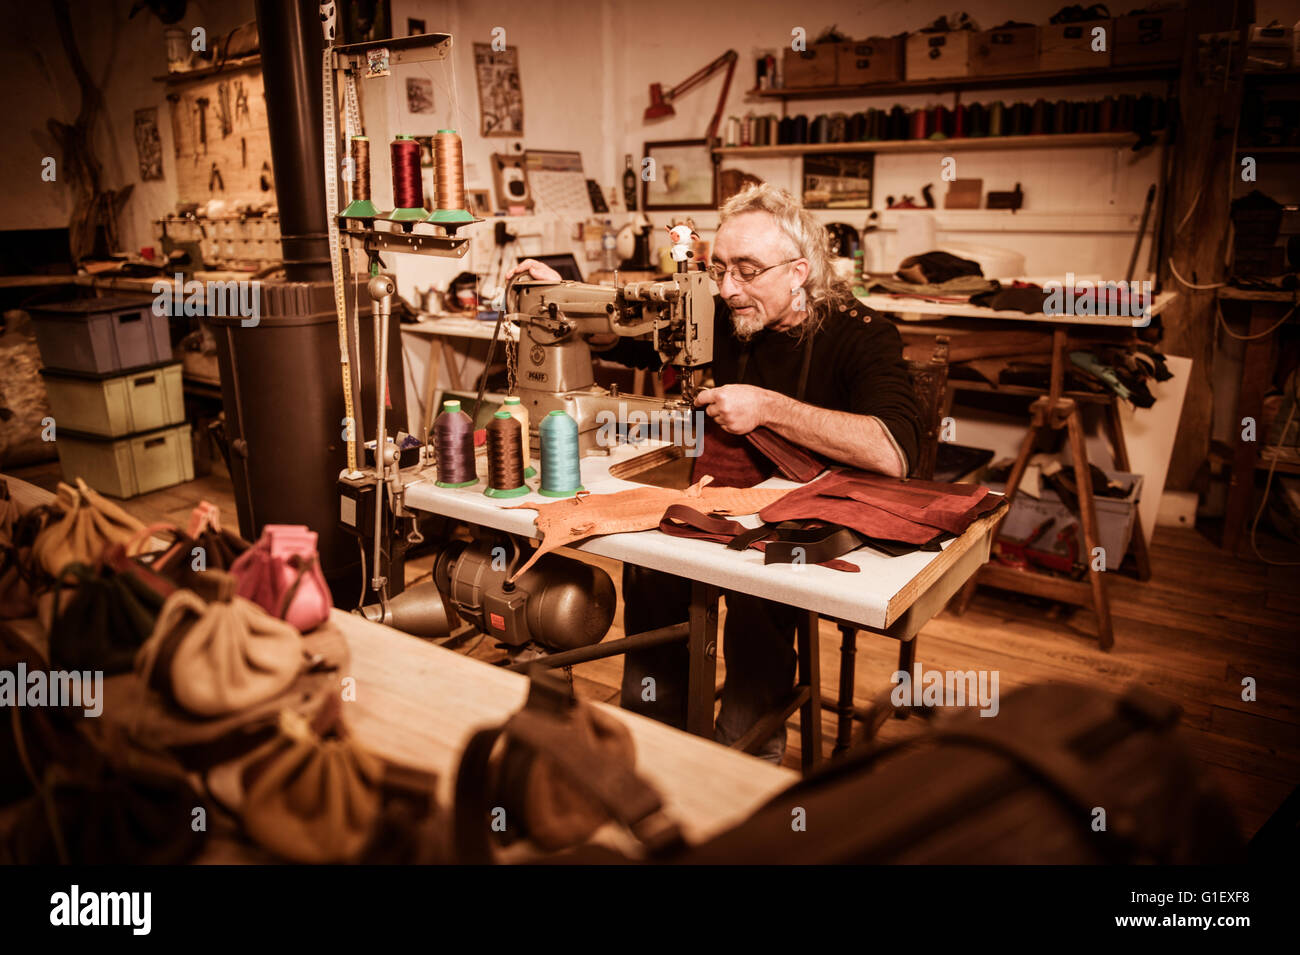 Maroquinerie artisan au travail dans son atelier, France Banque D'Images